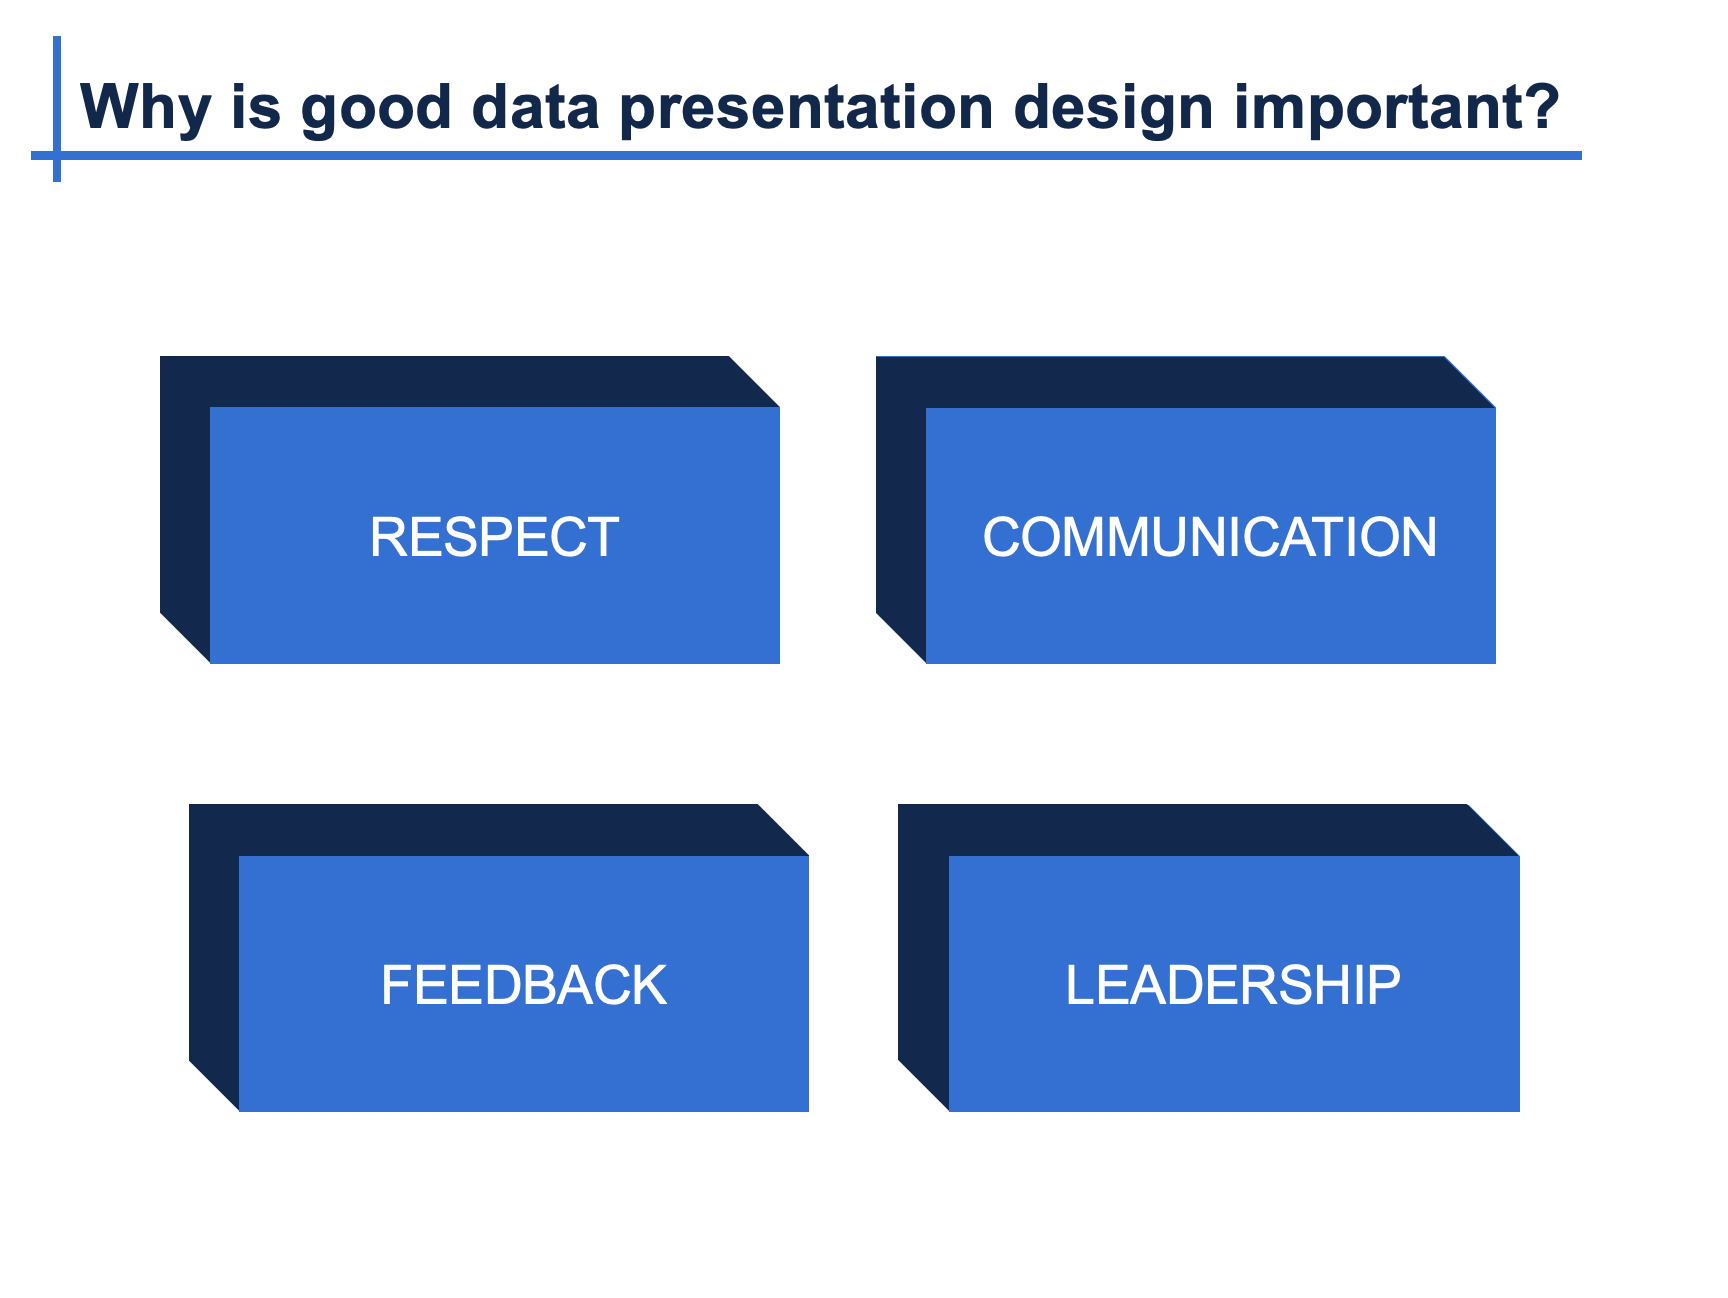 Data presentation design workshop introduction slide